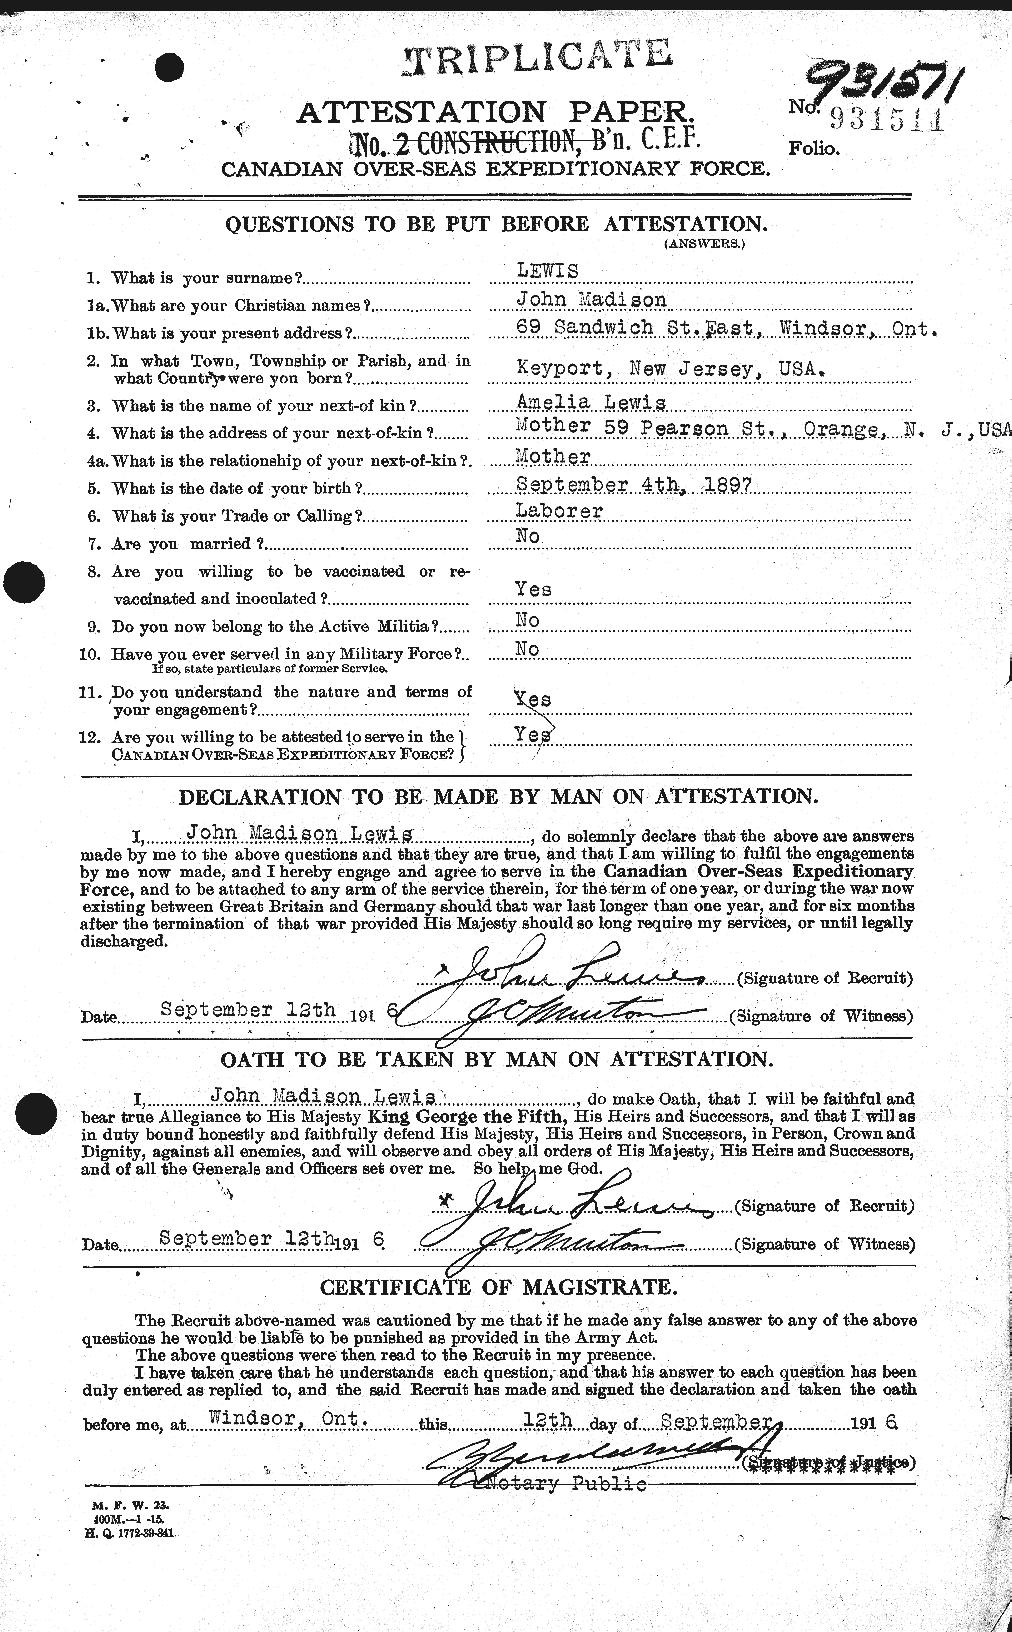 Dossiers du Personnel de la Première Guerre mondiale - CEC 463765a